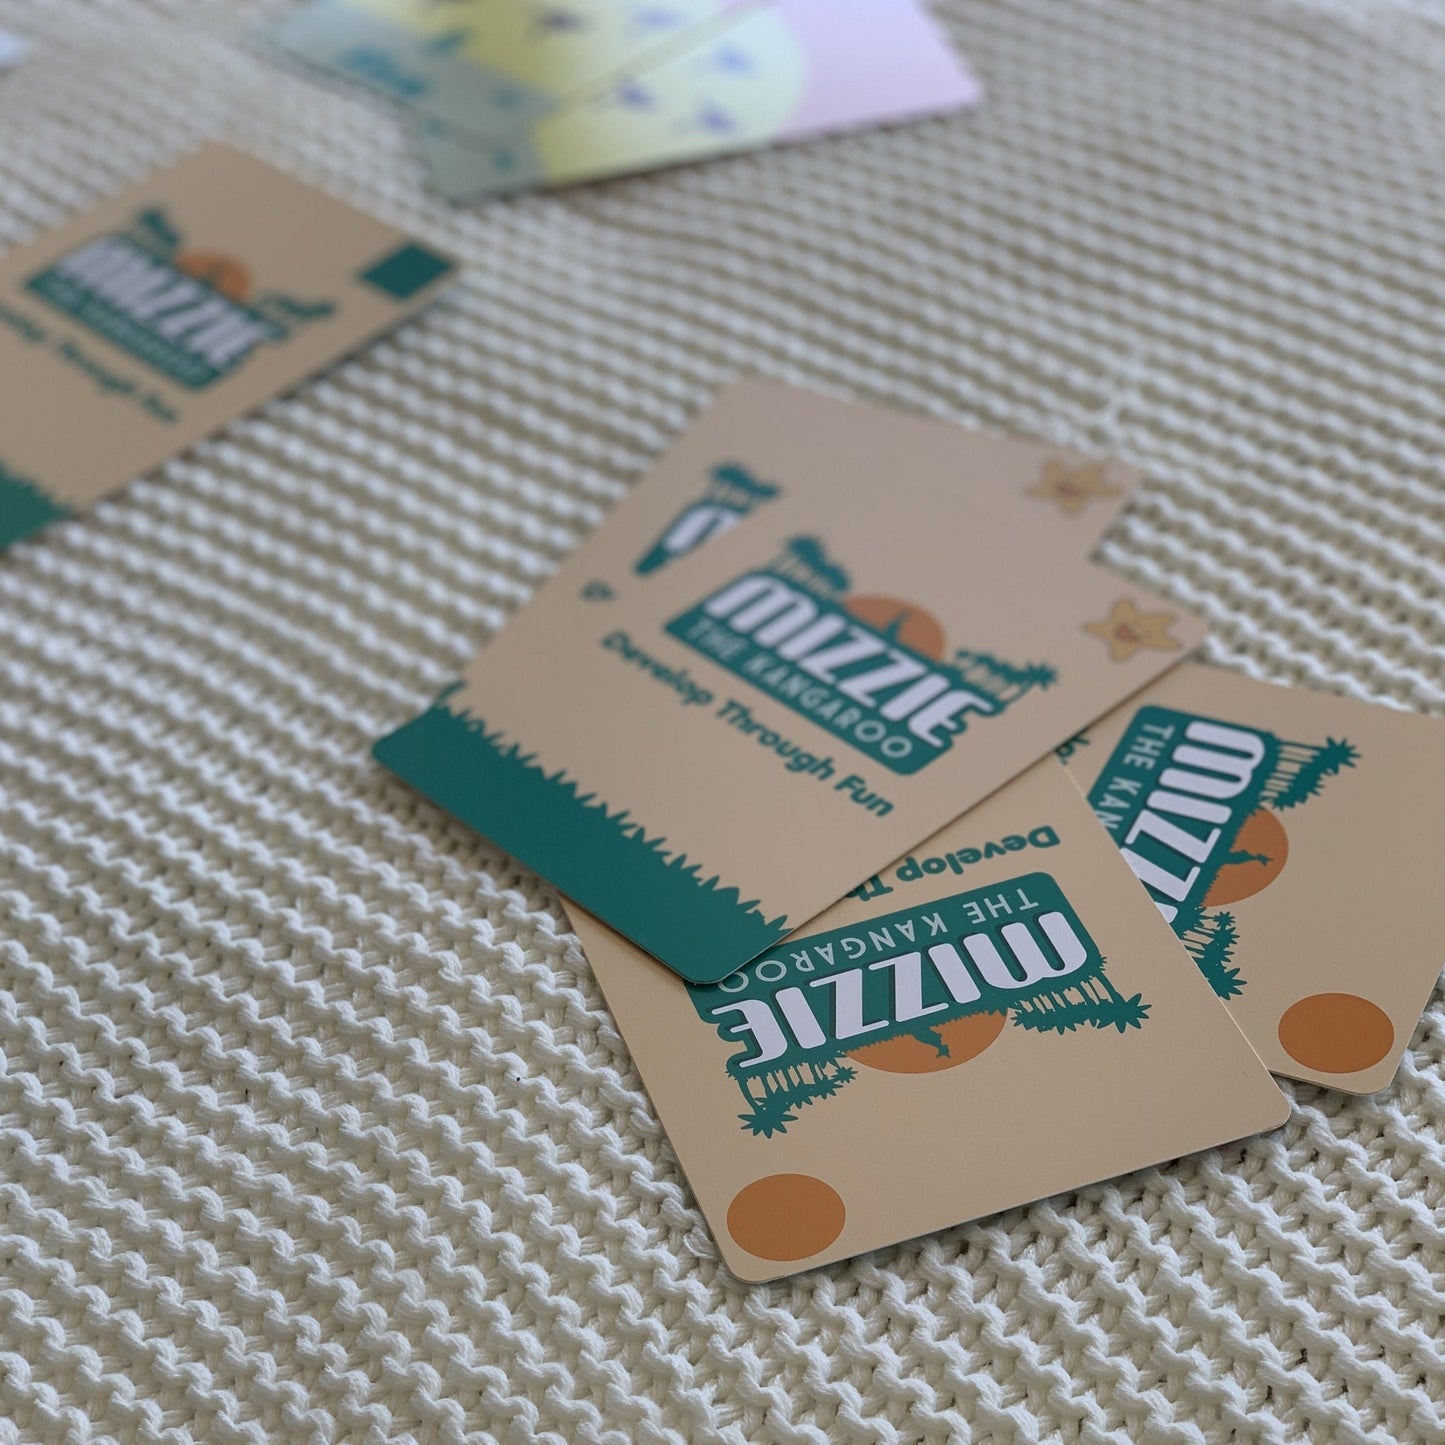 Mizzie The Kangaroo Memory Match 4 in 1 Flash Card Game Set